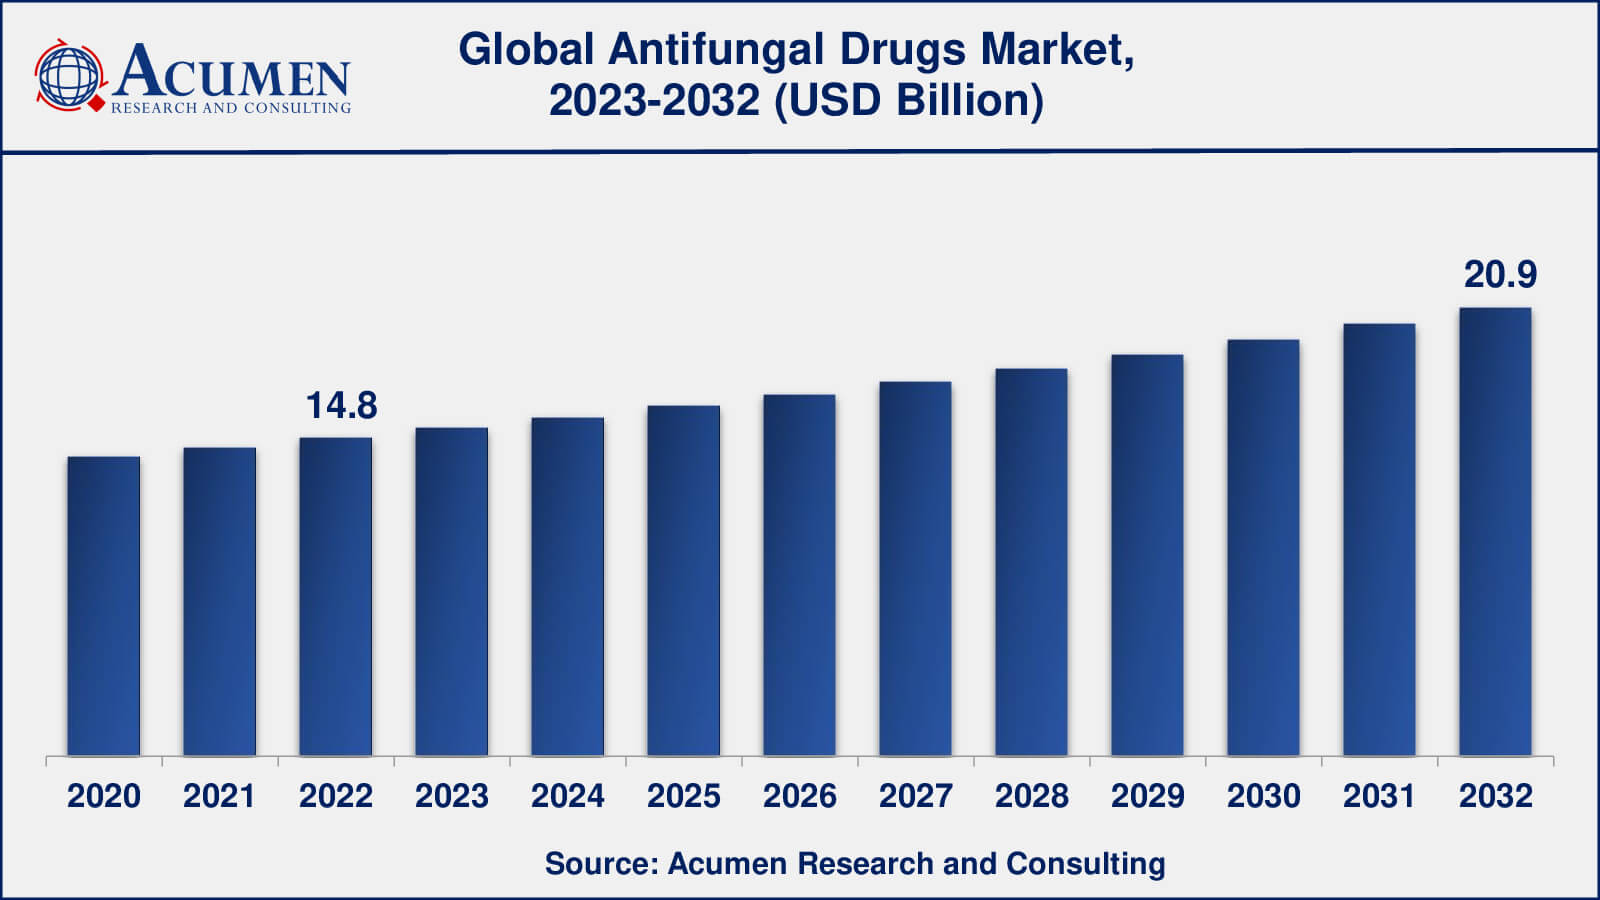 Antifungal Drugs Market Analysis Period